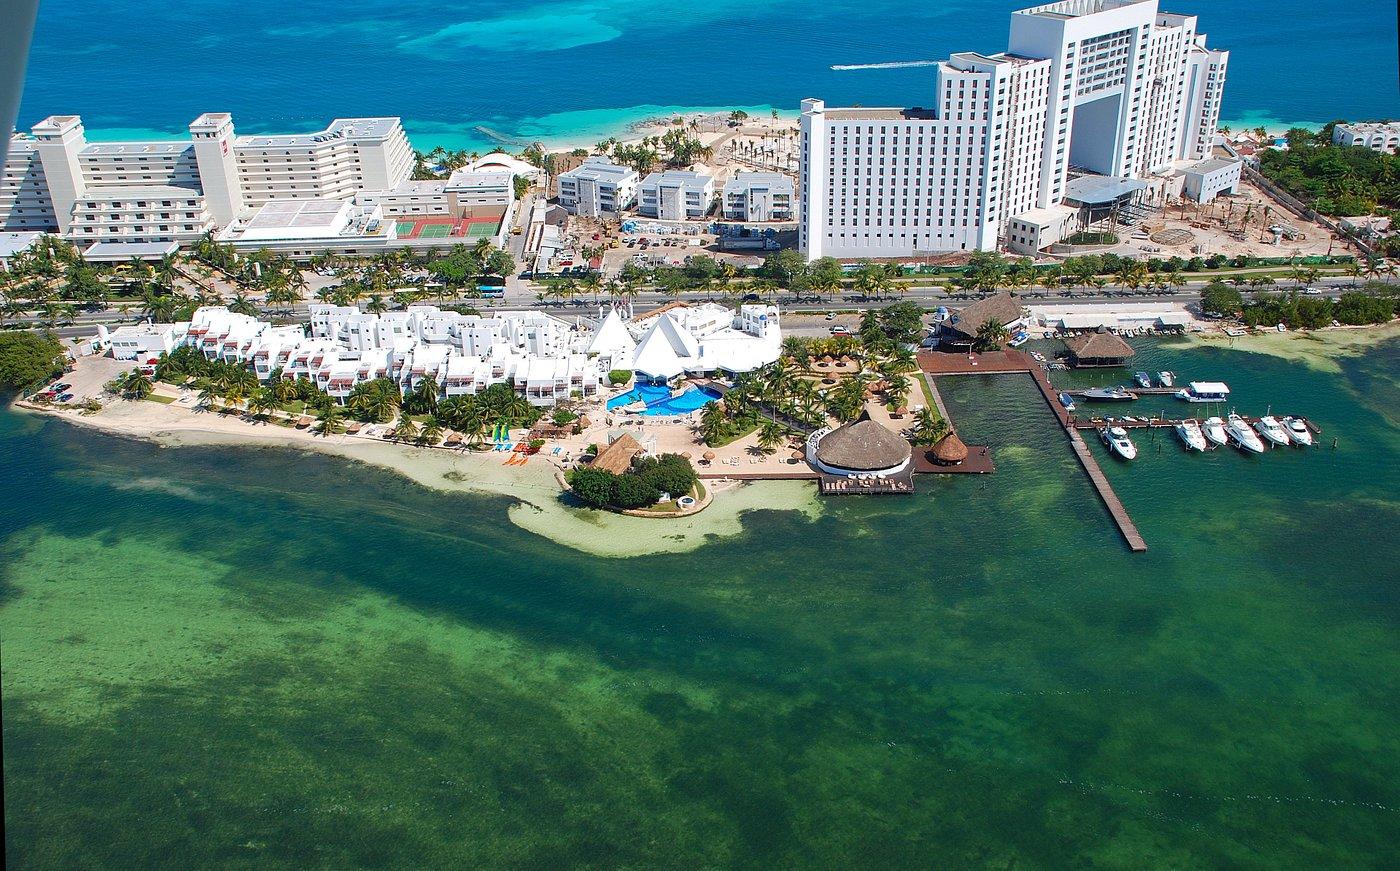 Sunset Marina Resort & Yacht Club Aerial